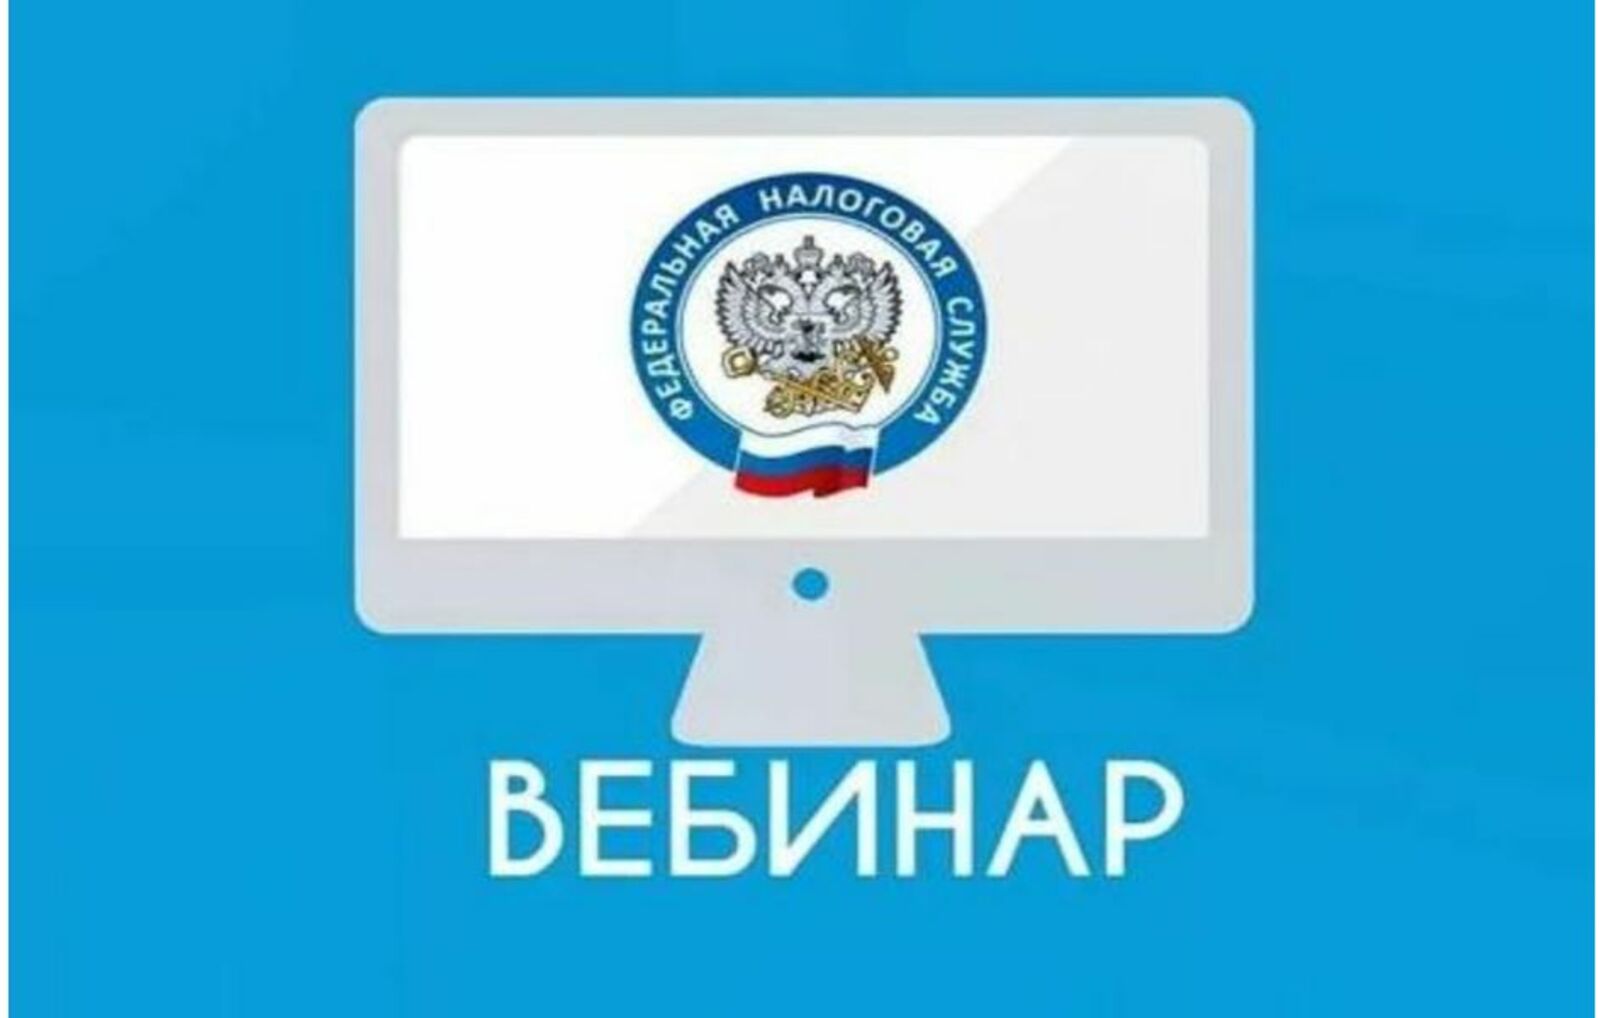 В Башкирии для налогоплательщиков пройдет онлайн-вебинар